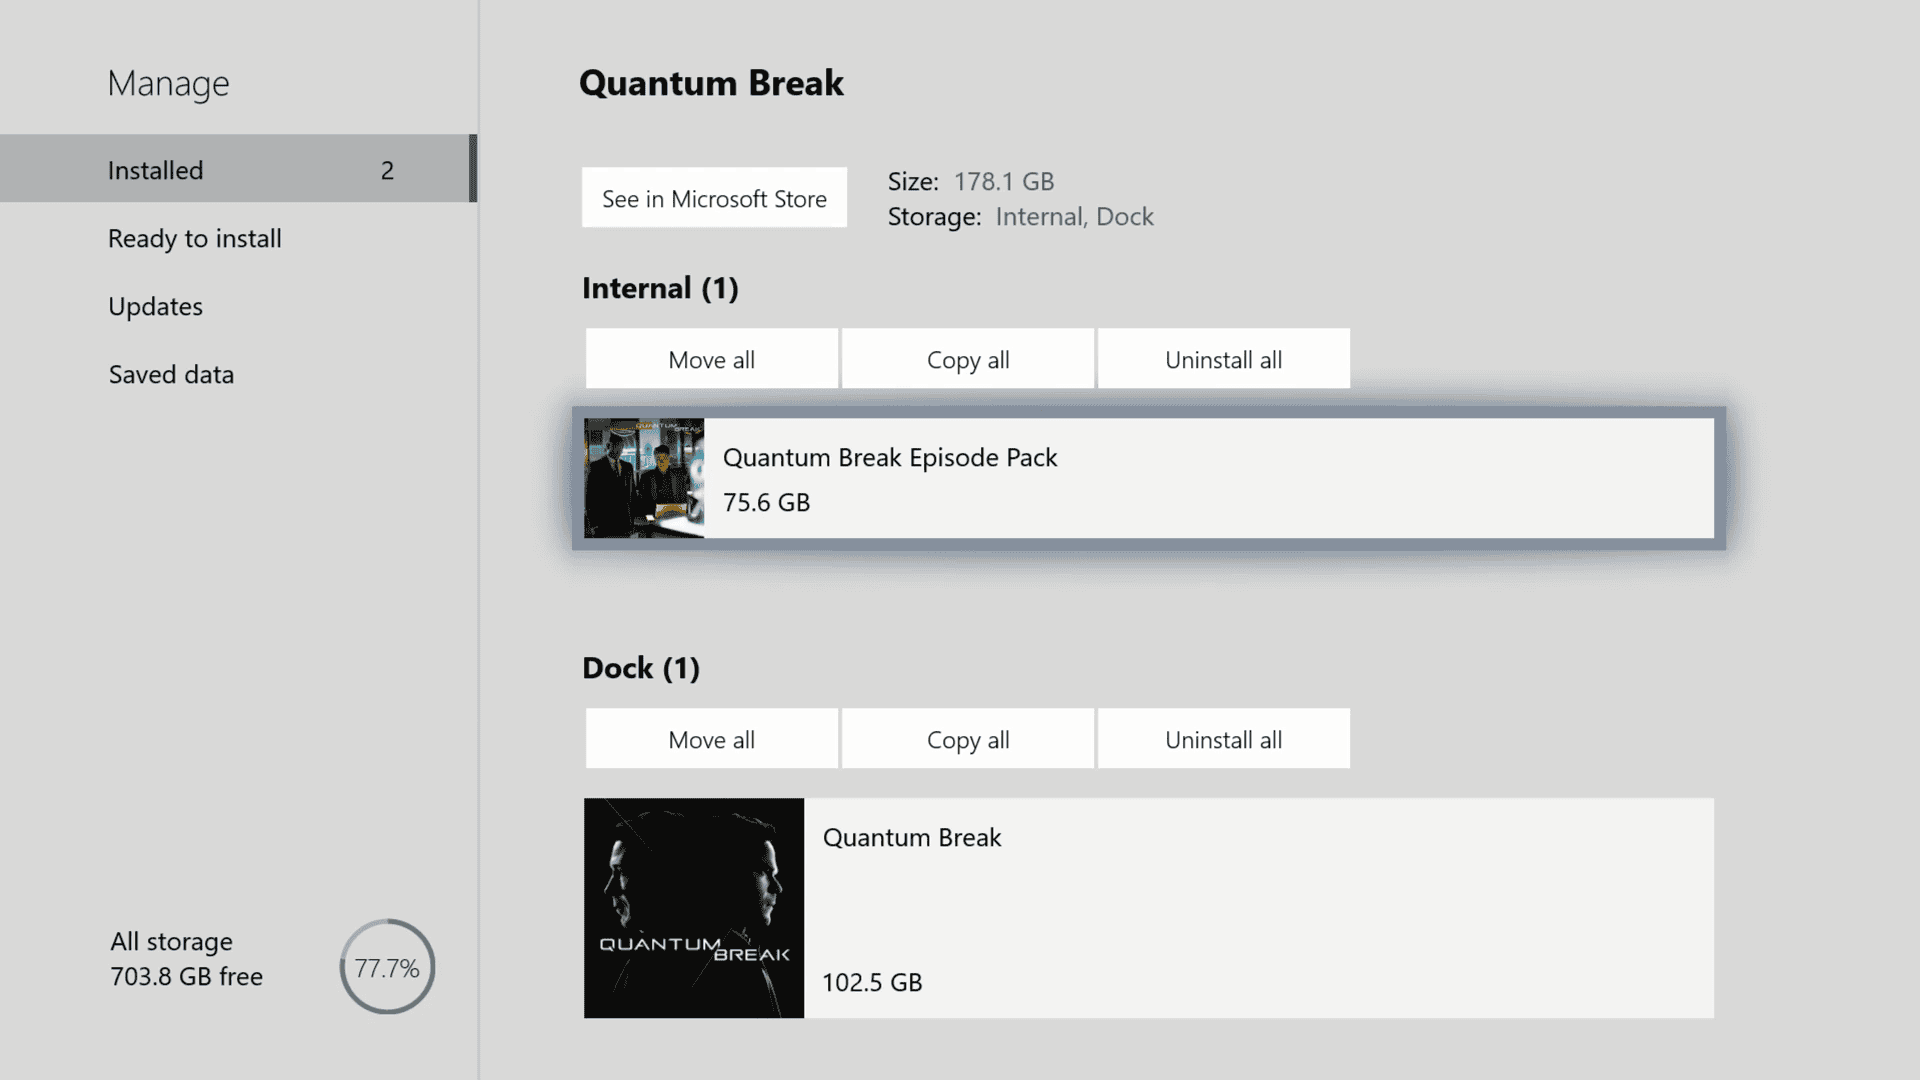 quantum break xbox one